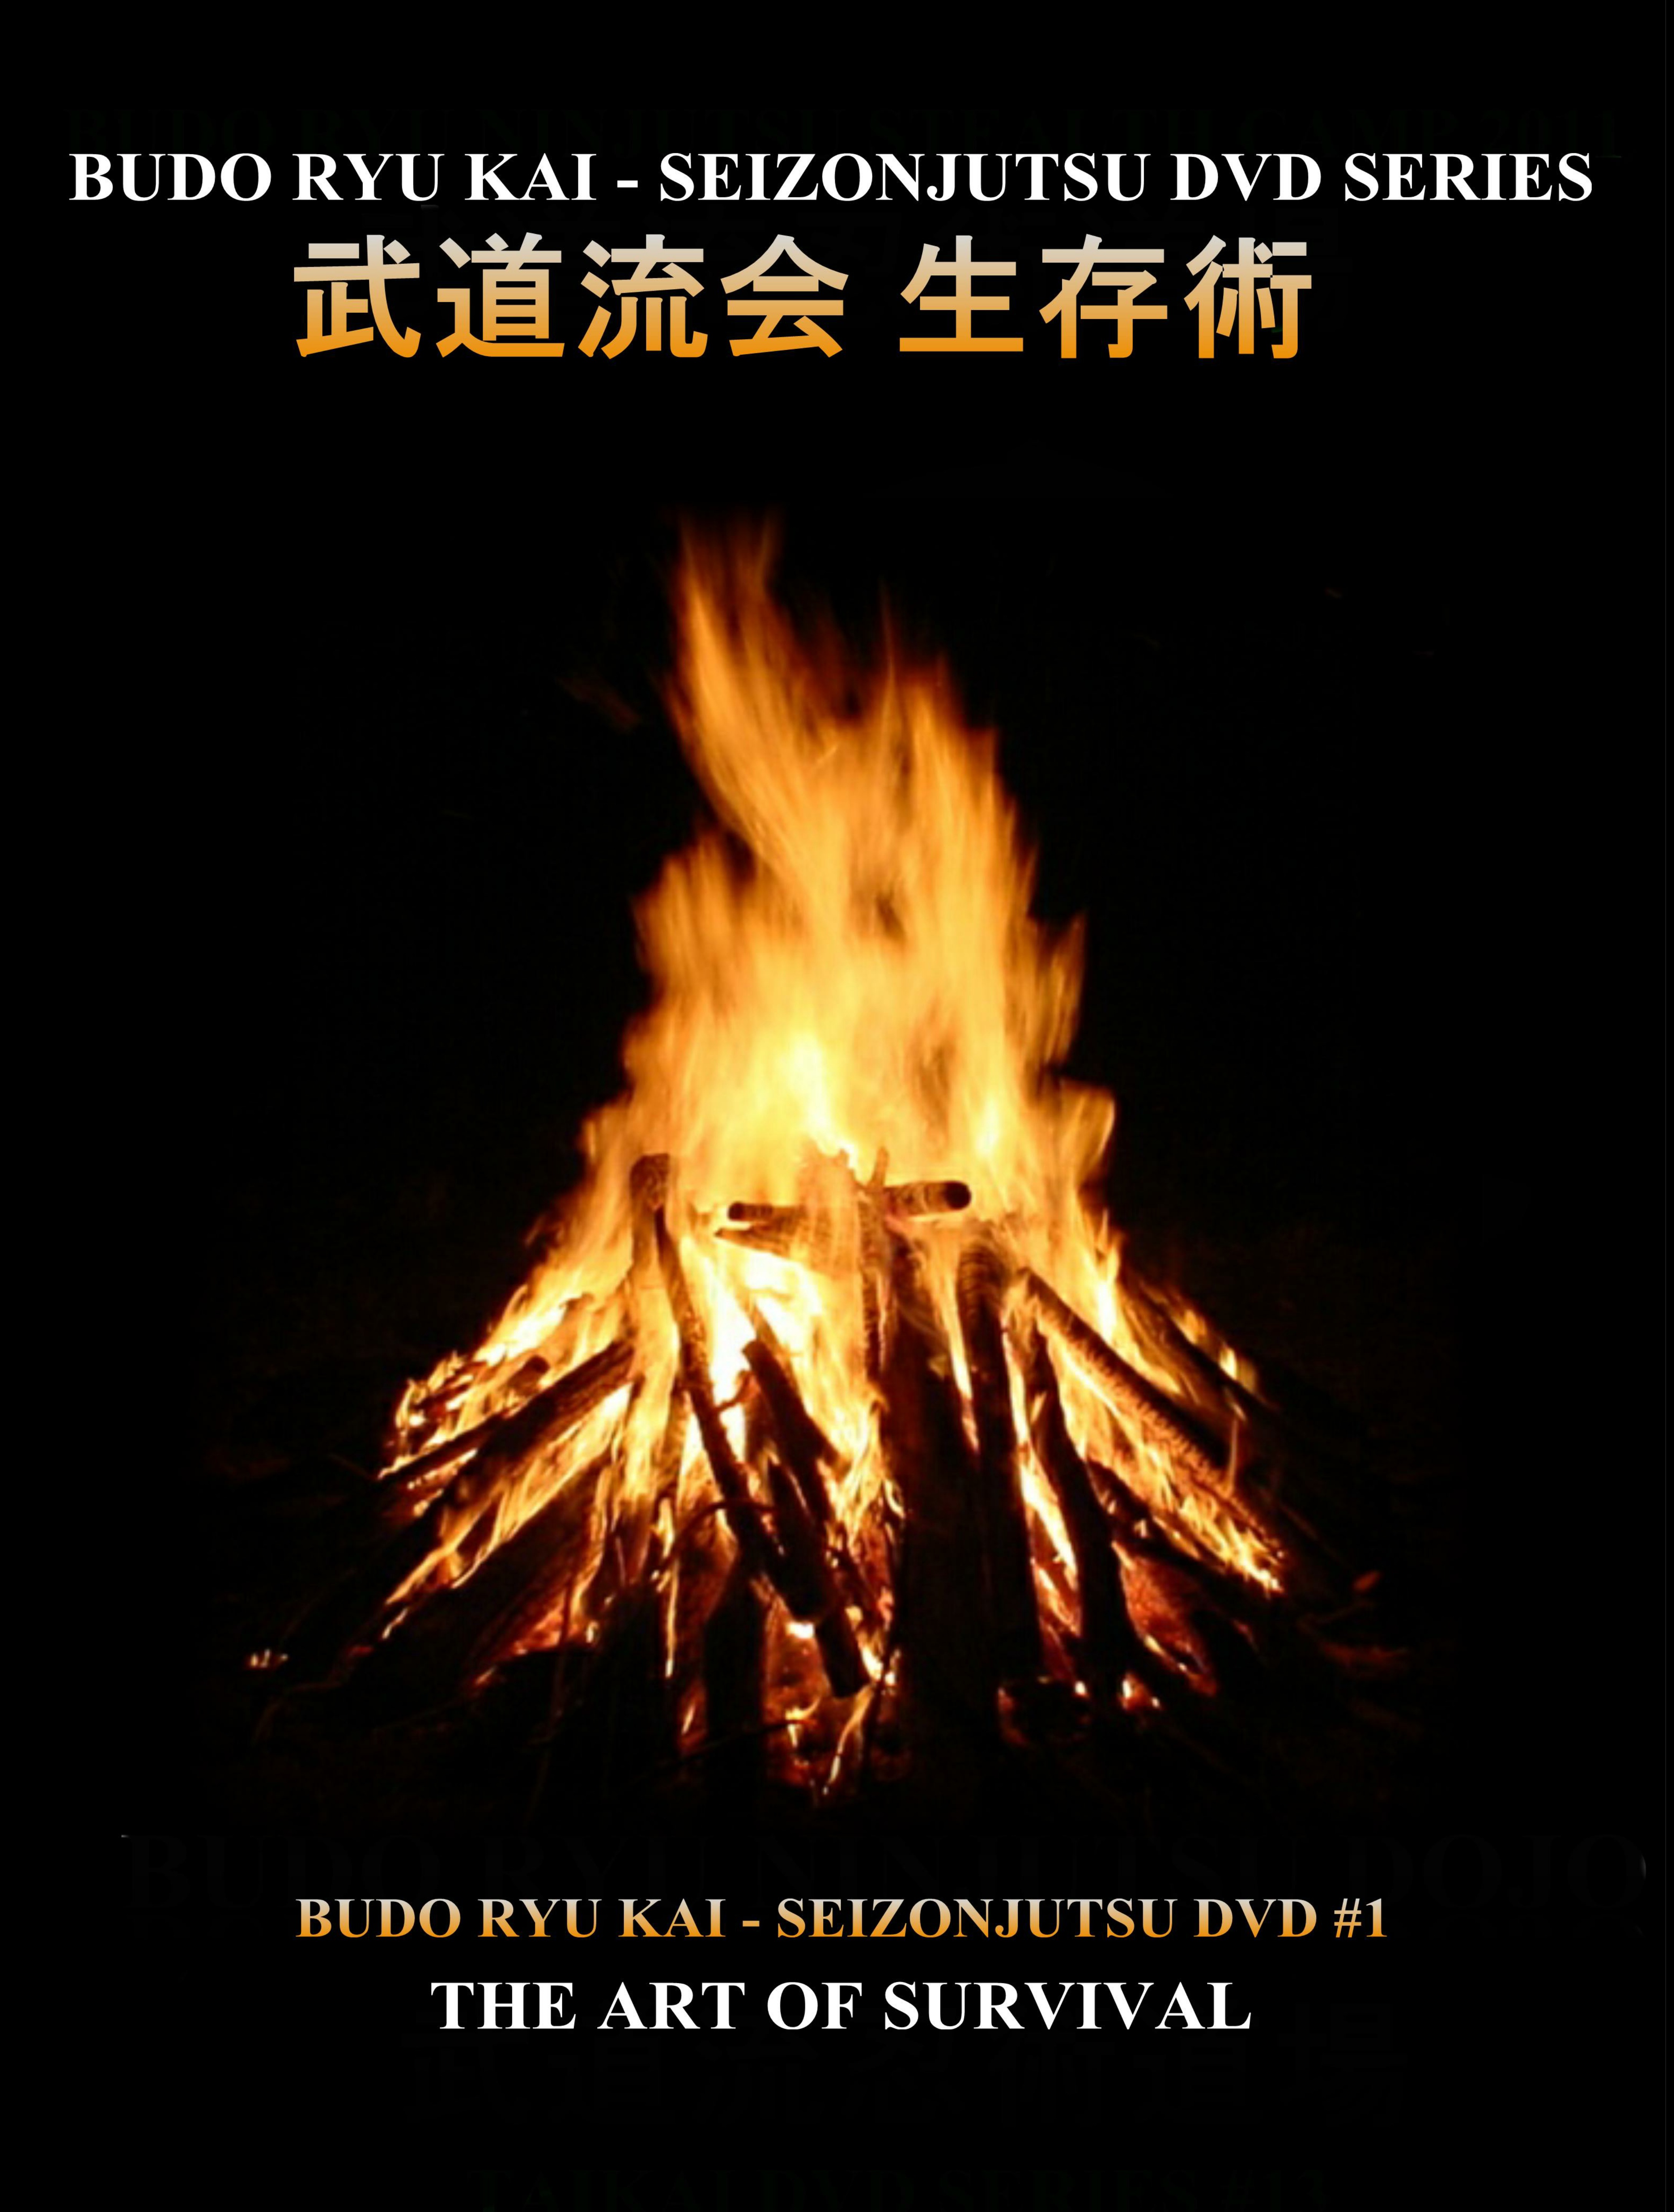 Budo Ryu Kai Seizonjutsu DVD